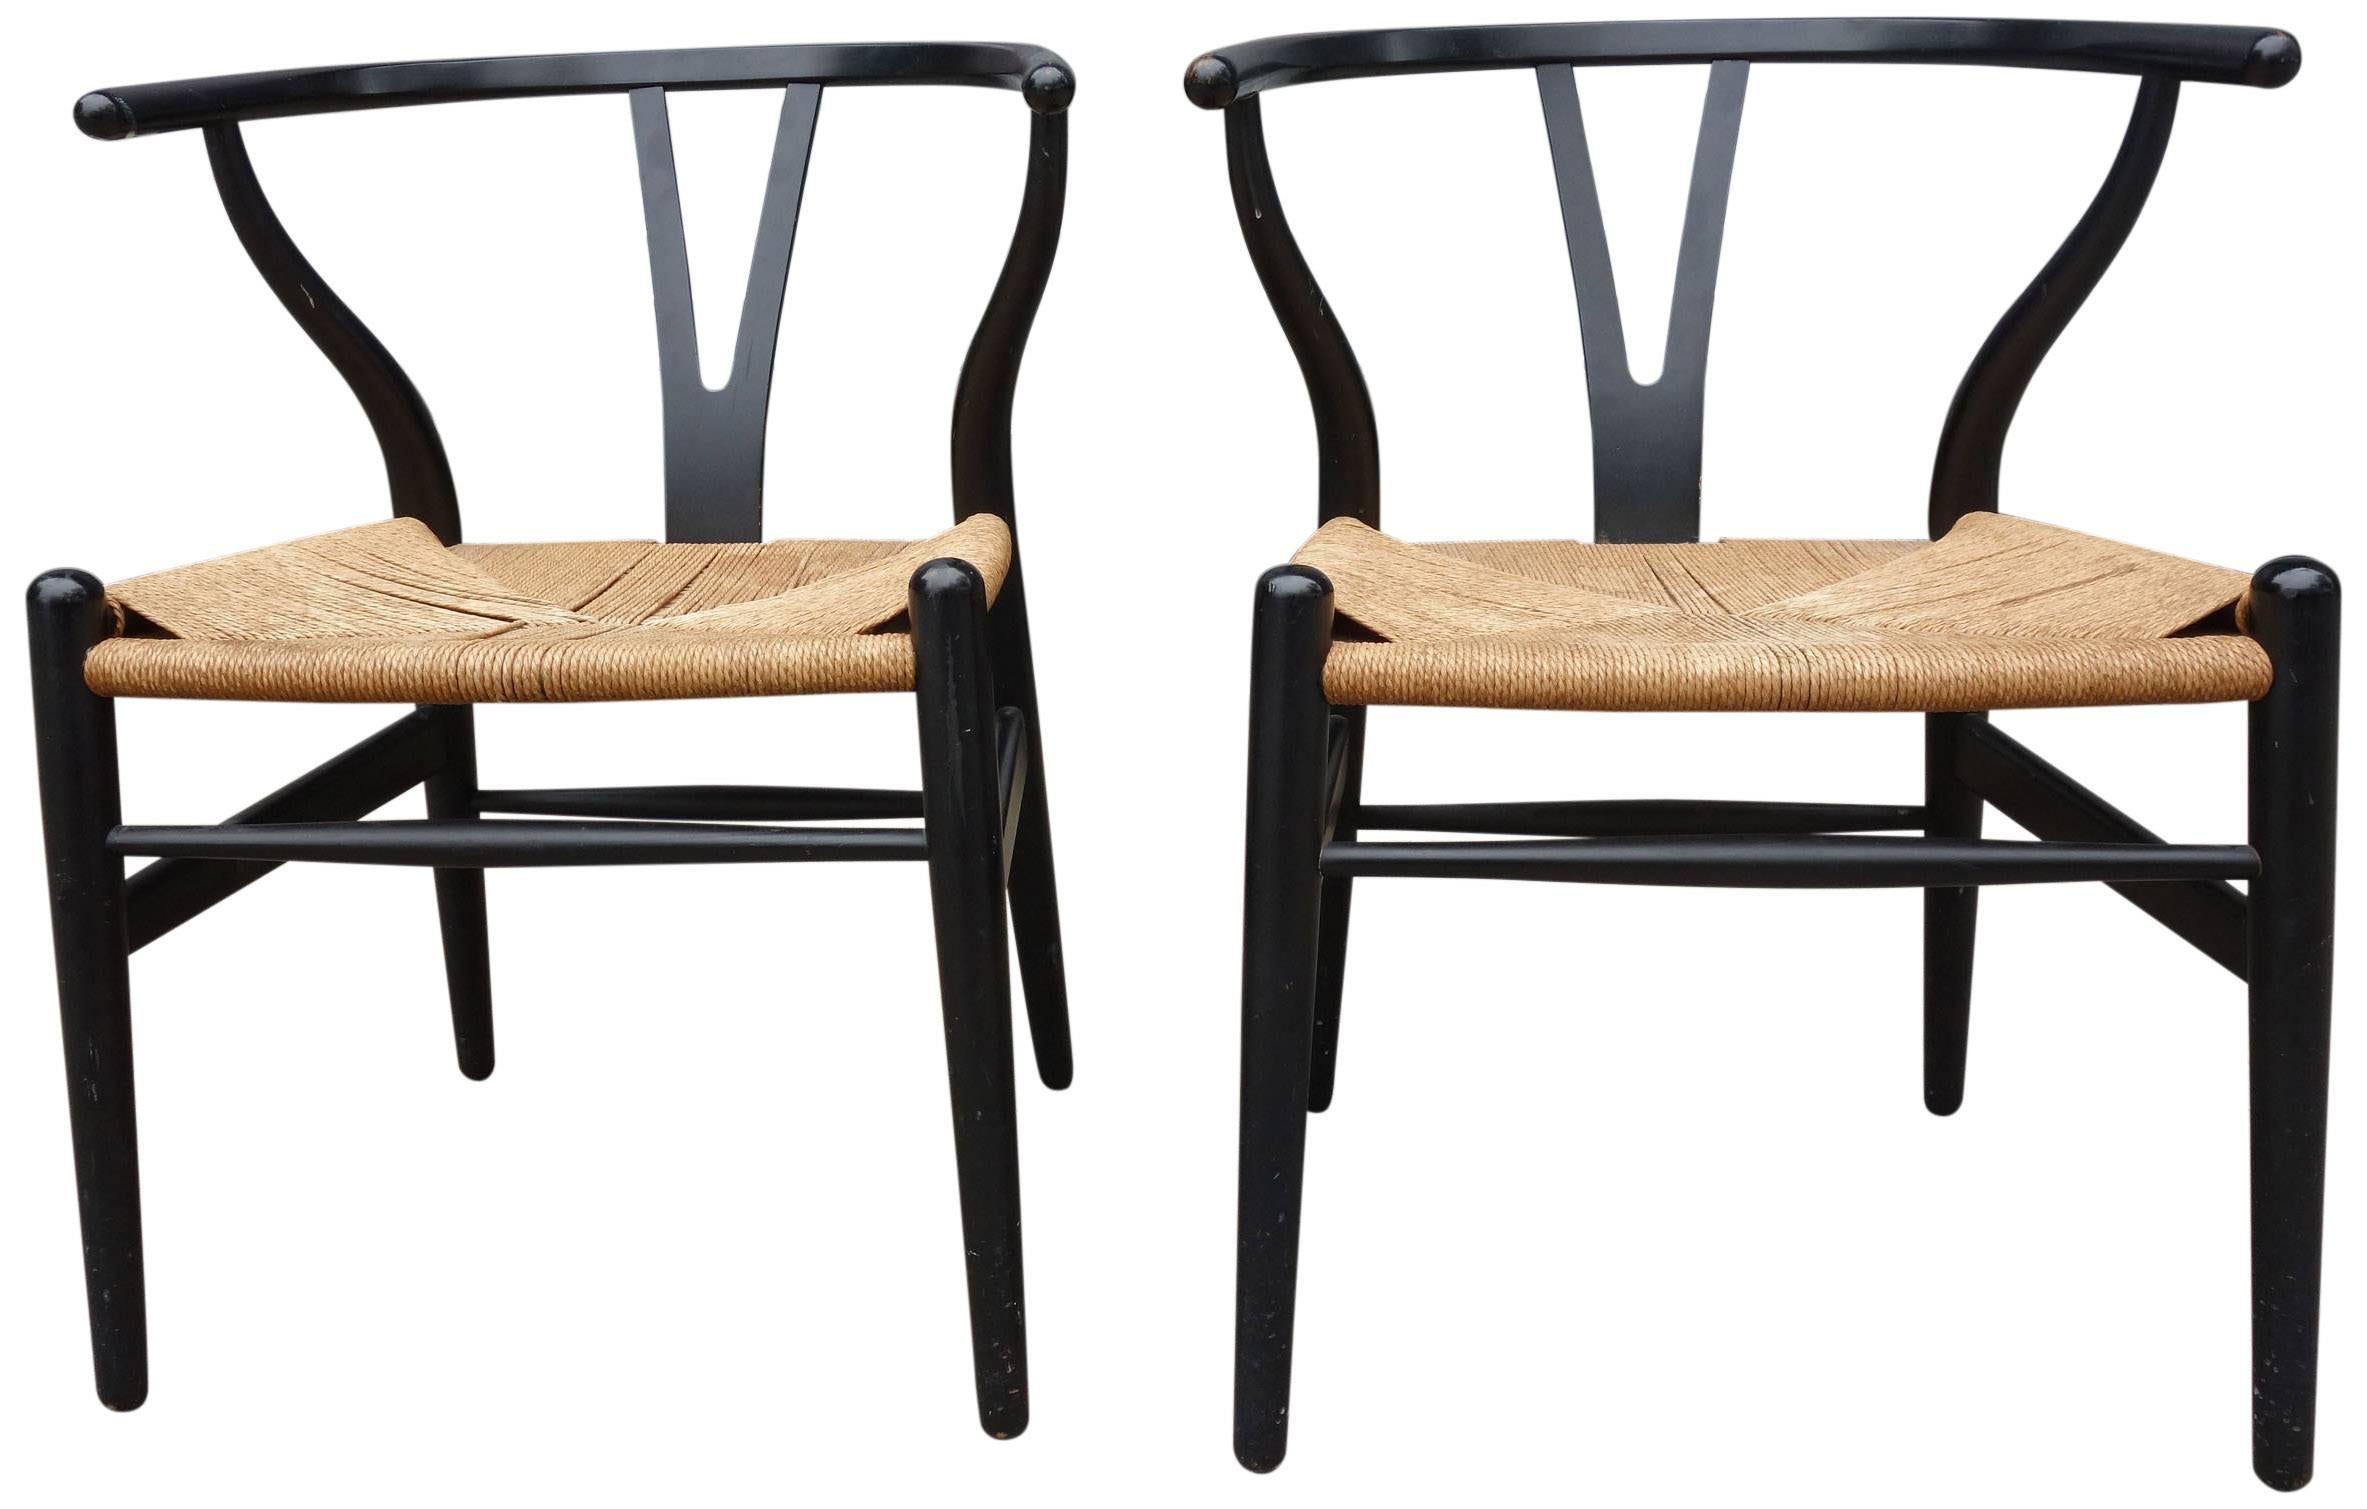 Scandinavian Modern Midcentury Hans Wegner Wishbone Chairs